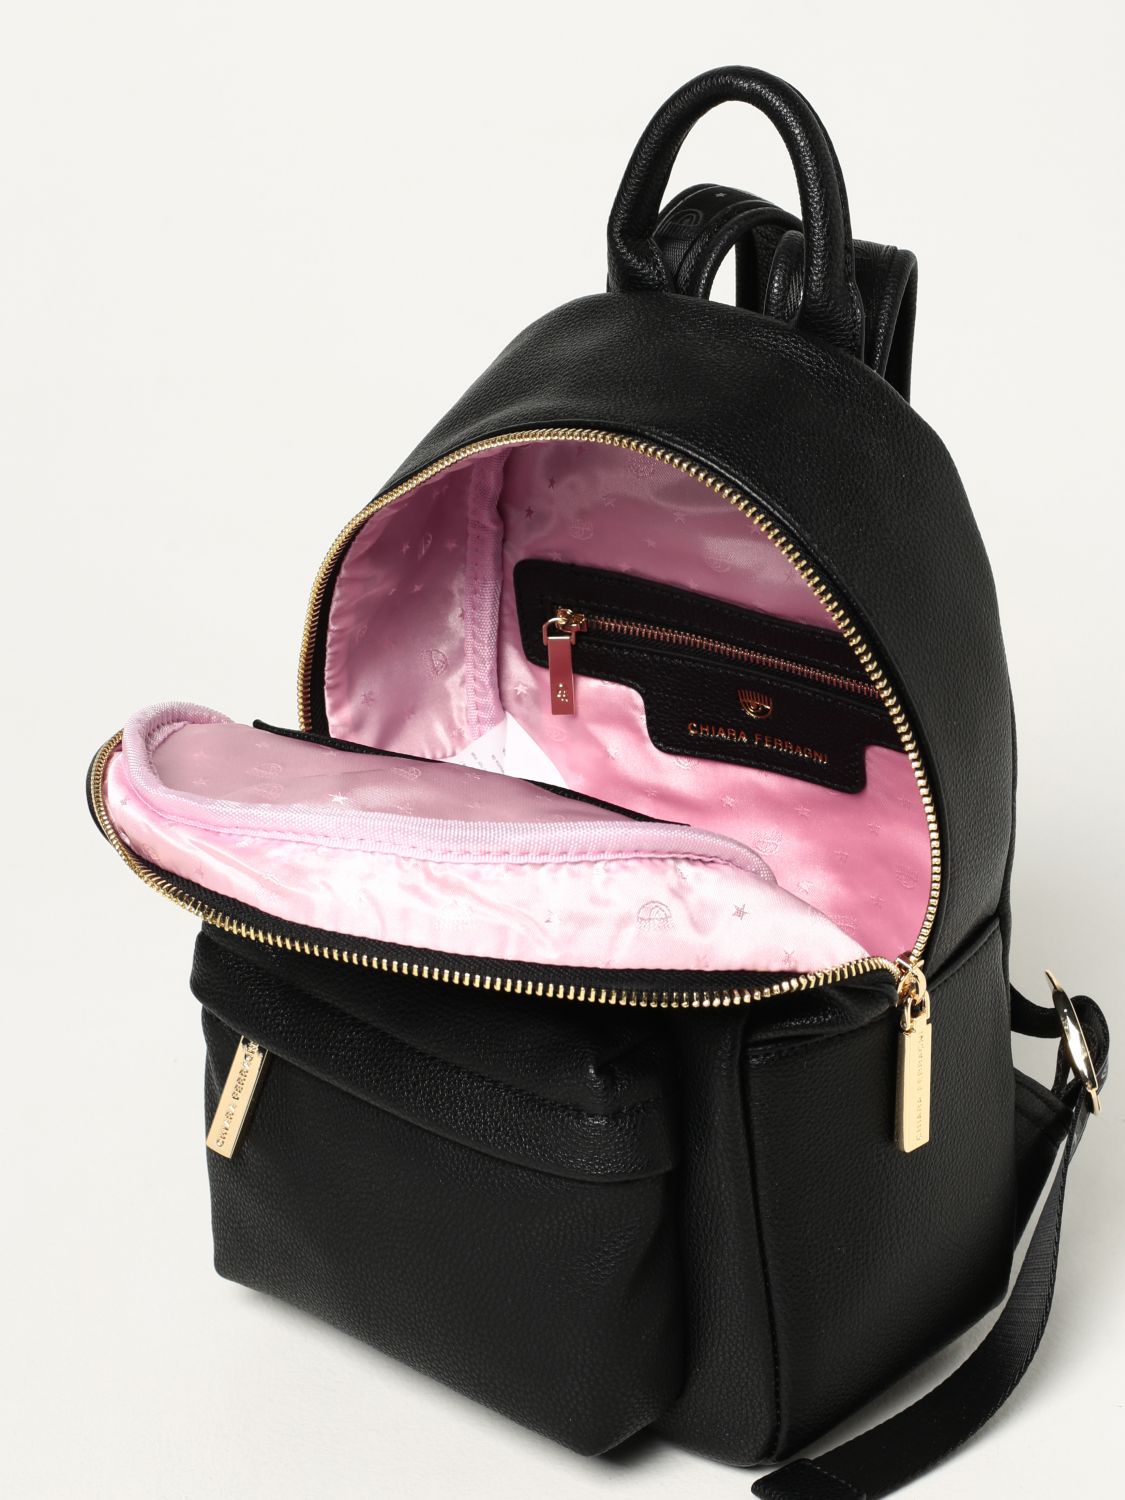 Chiara Ferragni Limited Edition Eye Design Backpack